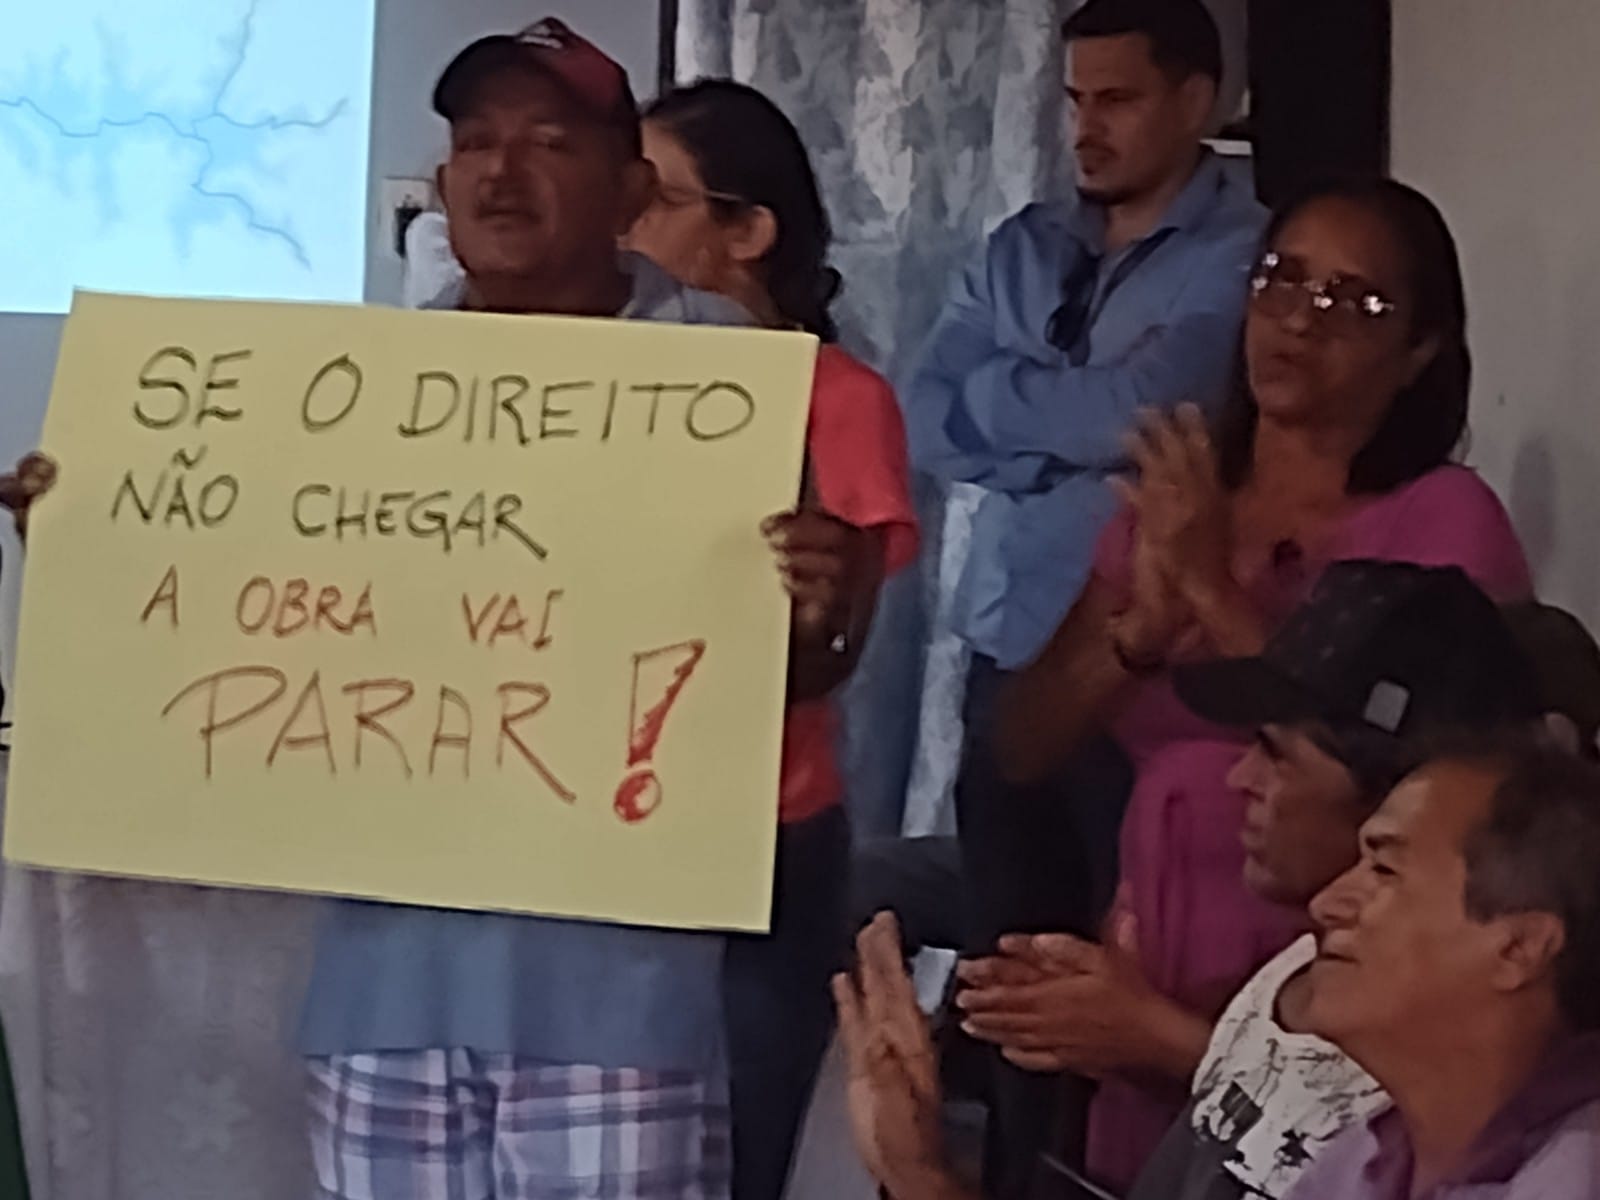 Comunidades atingidas por barragem apresentam carta-denúncia e avisam: "não somos peixe. vamos lutar!"